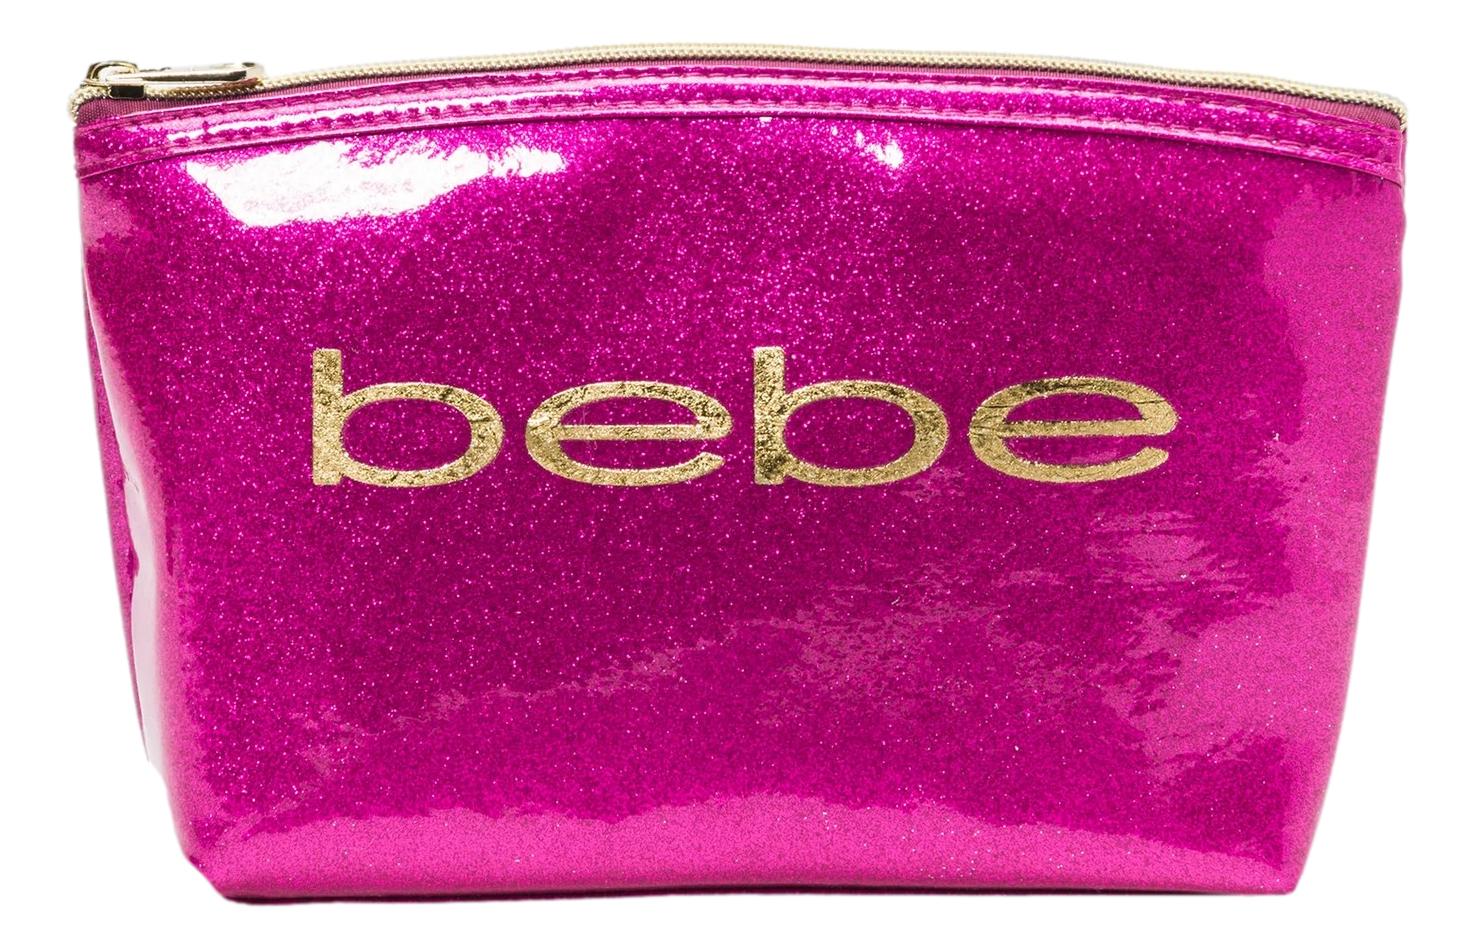 Bebe Women's Bag - Pink